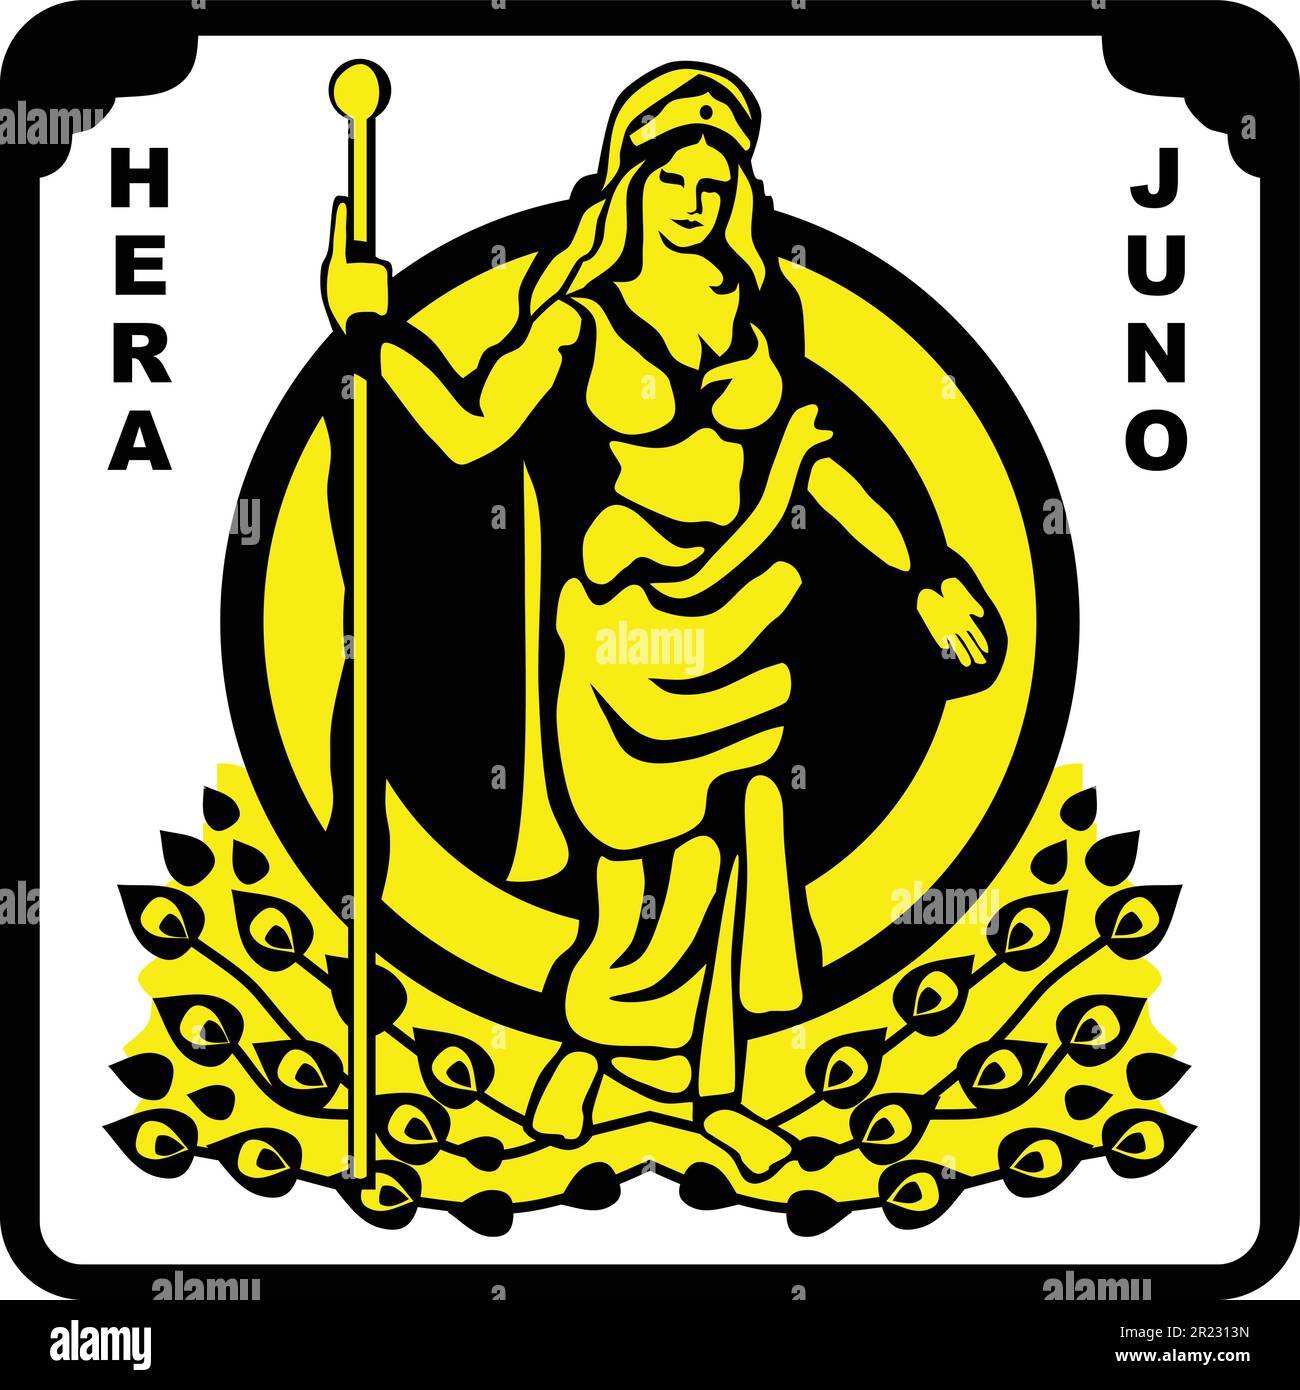 Hera Juno, Gottheit der Griechen und Roms Stock Vektor